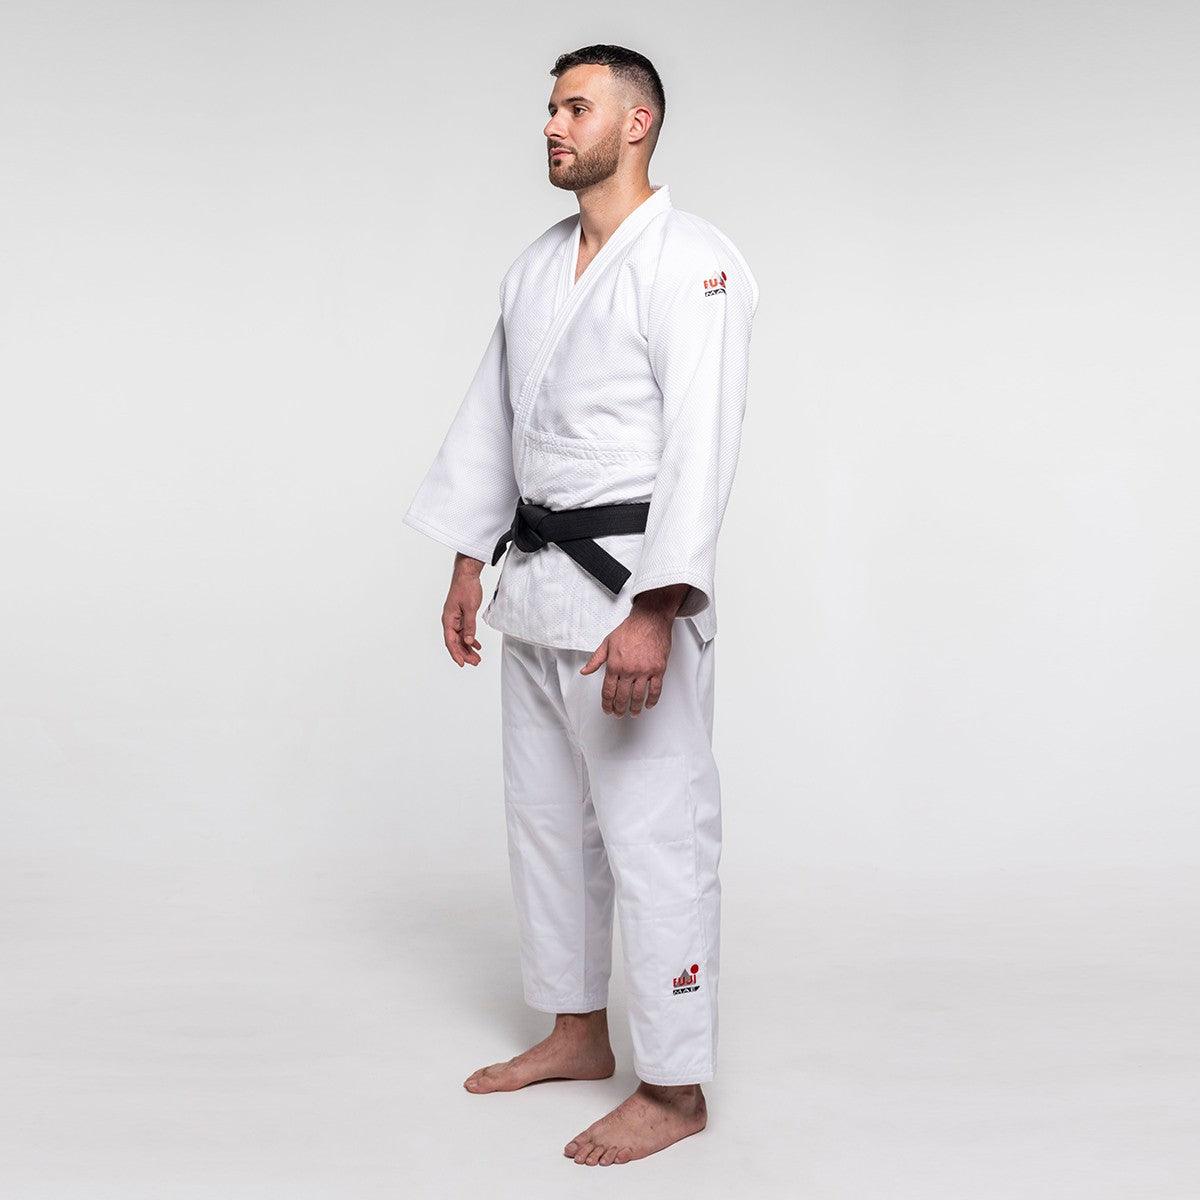 Kimono de judo compétition ProWear 2 Fuji Mae - 10332